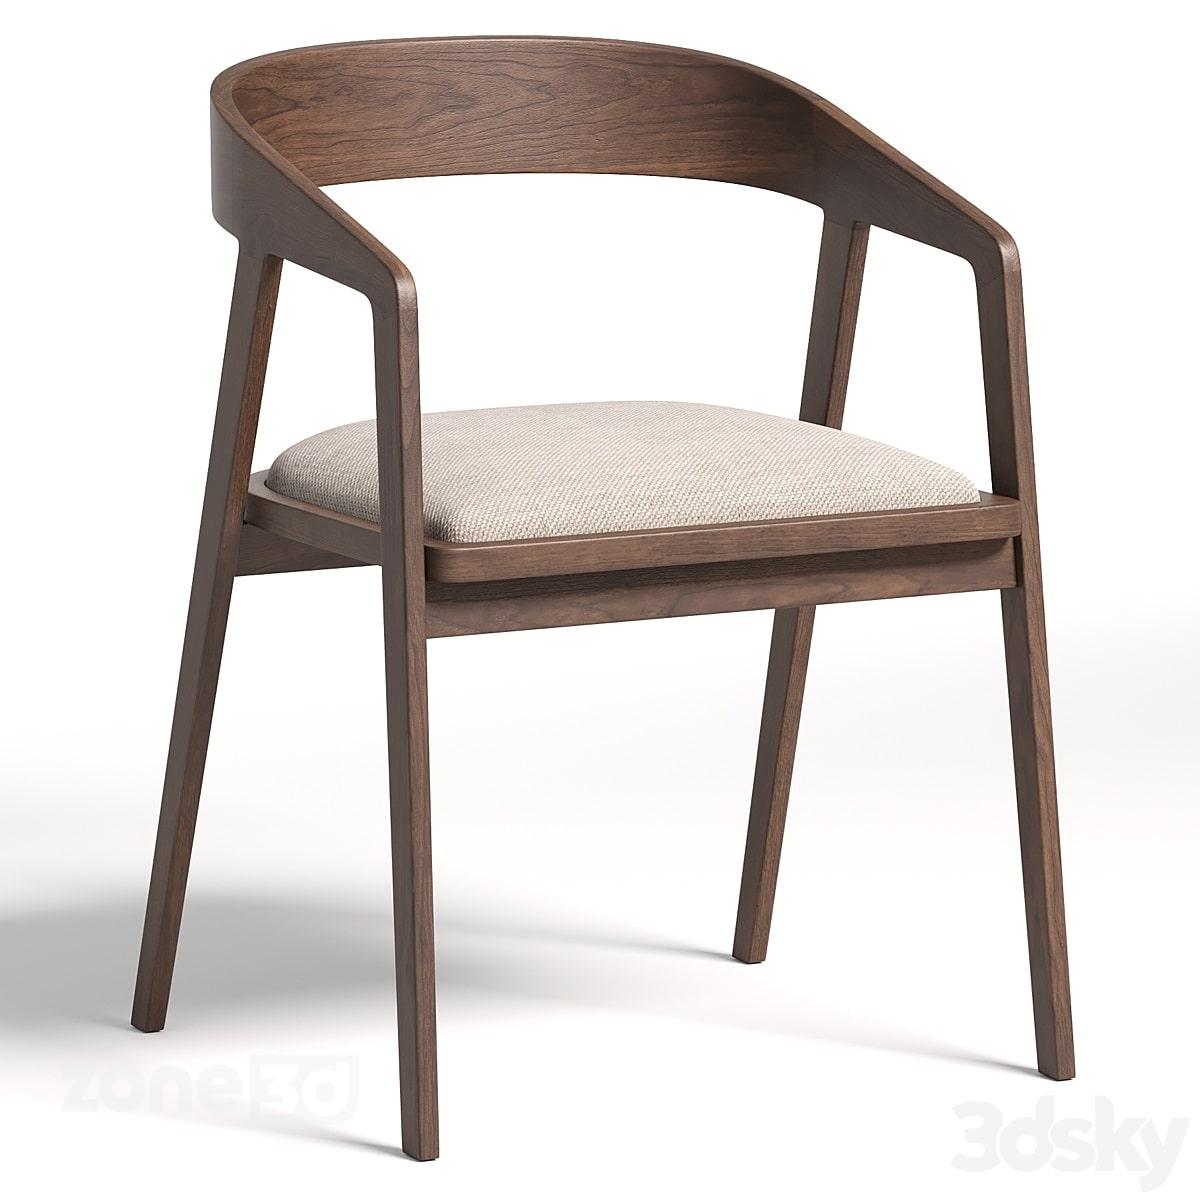 آبجکت صندلی تک نفره مدرن پارچه ای با دسته و پایه چوبی